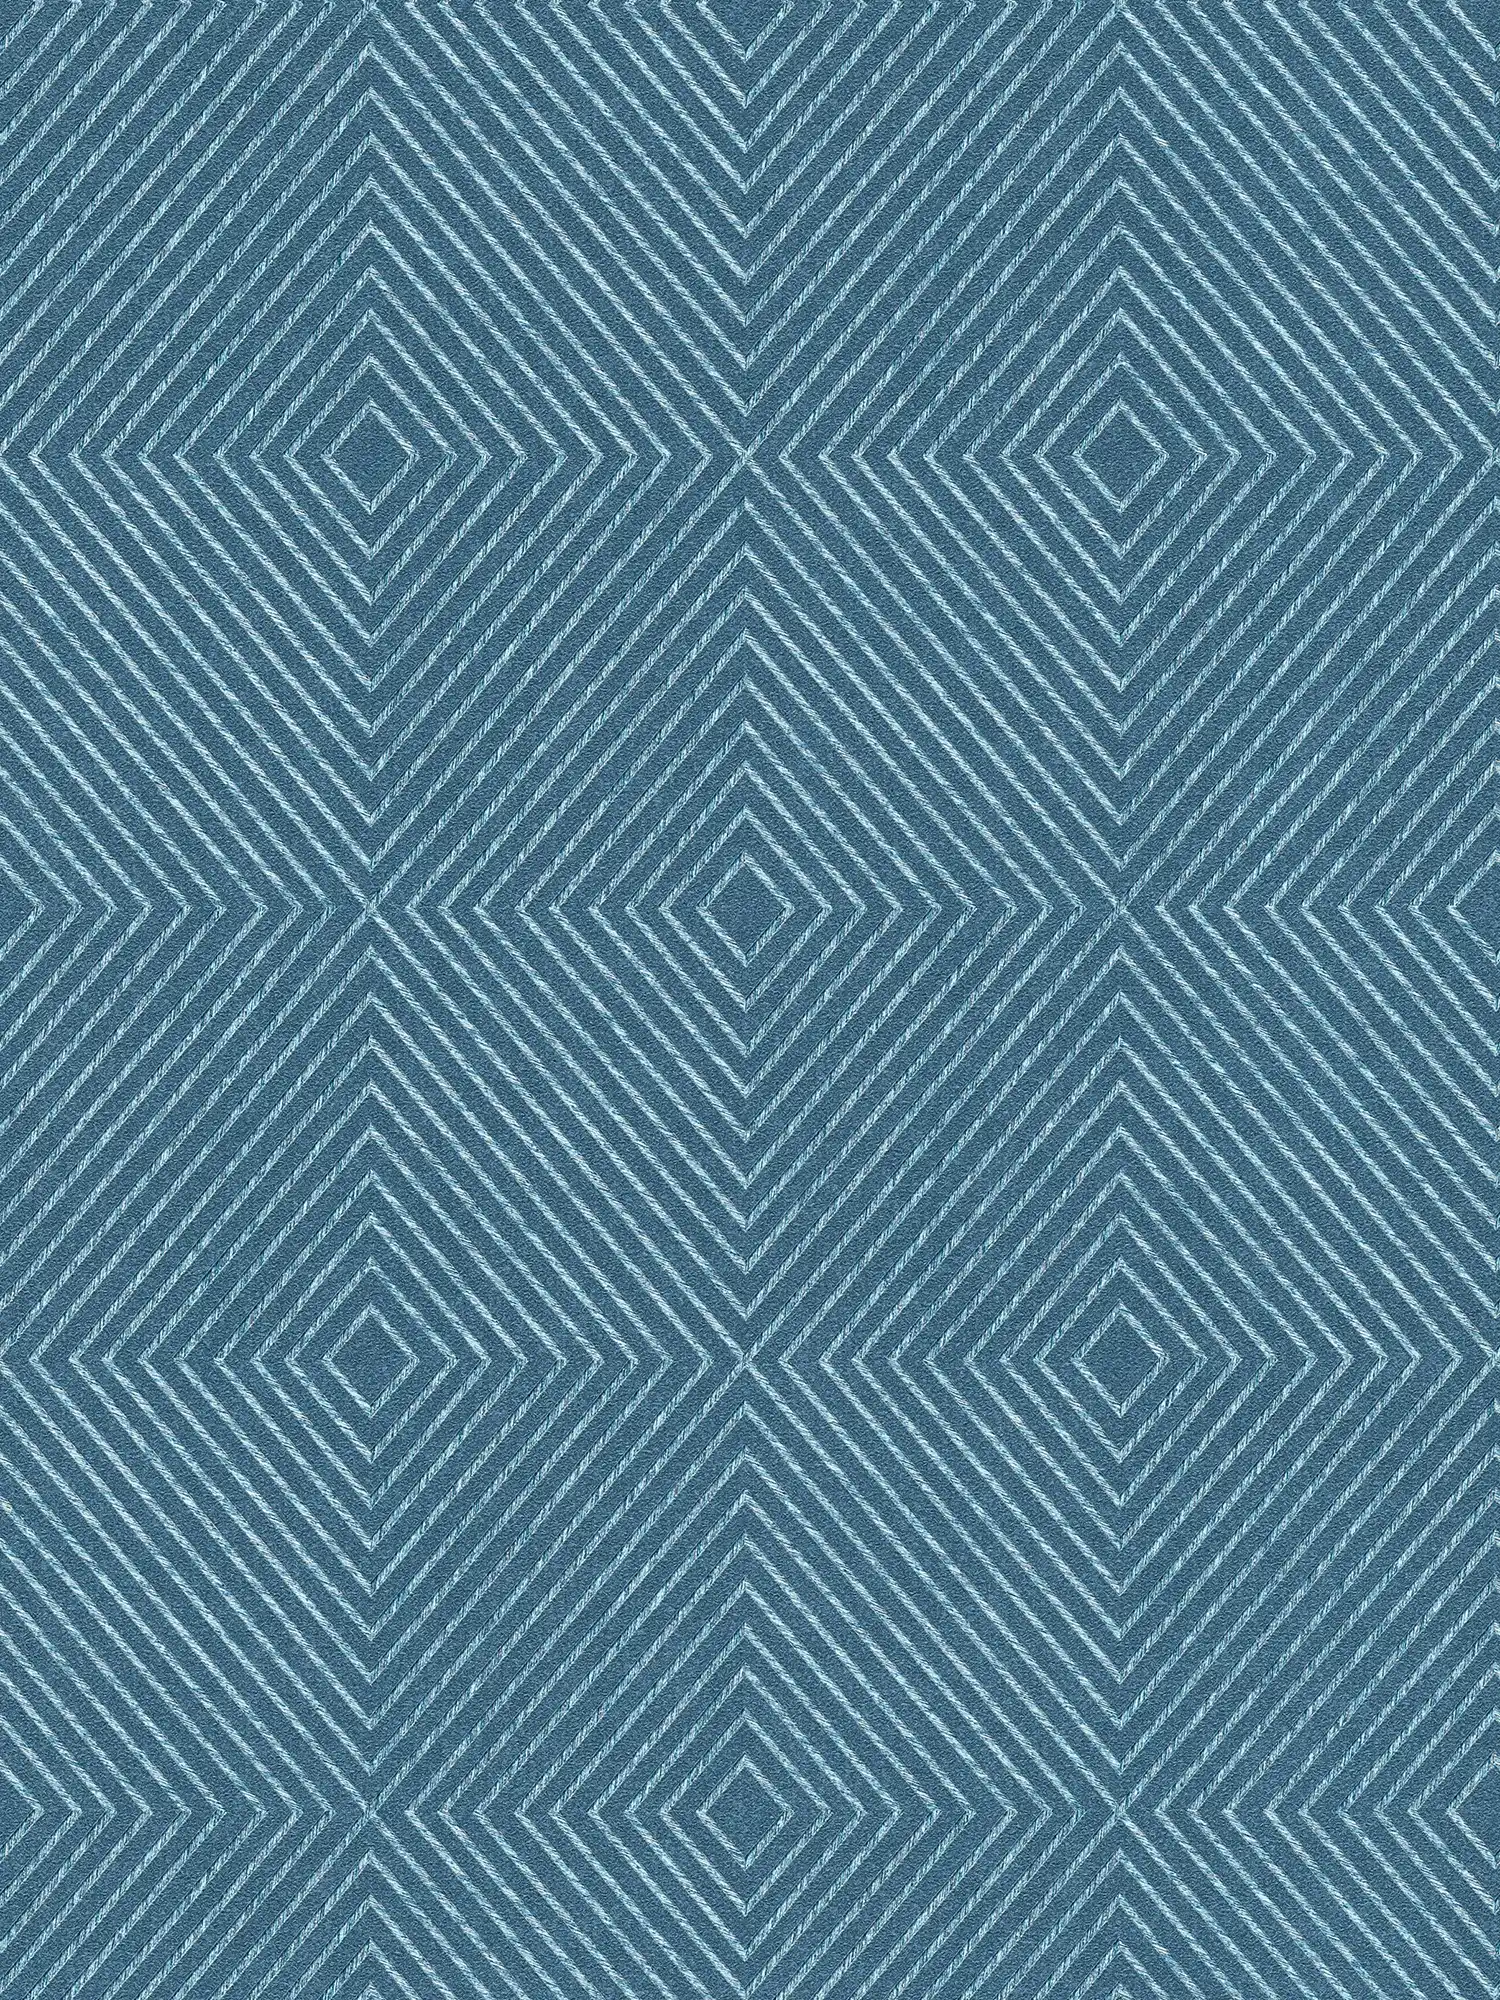 Papier peint design graphique, style scandinave - bleu, argenté
